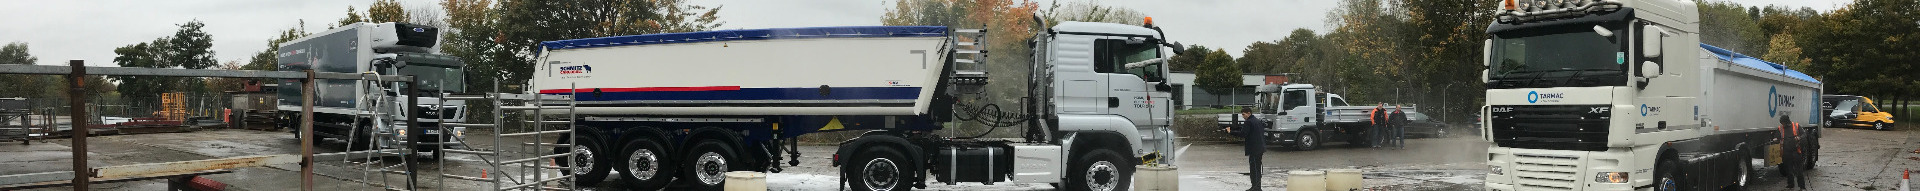 Northampton truck wash